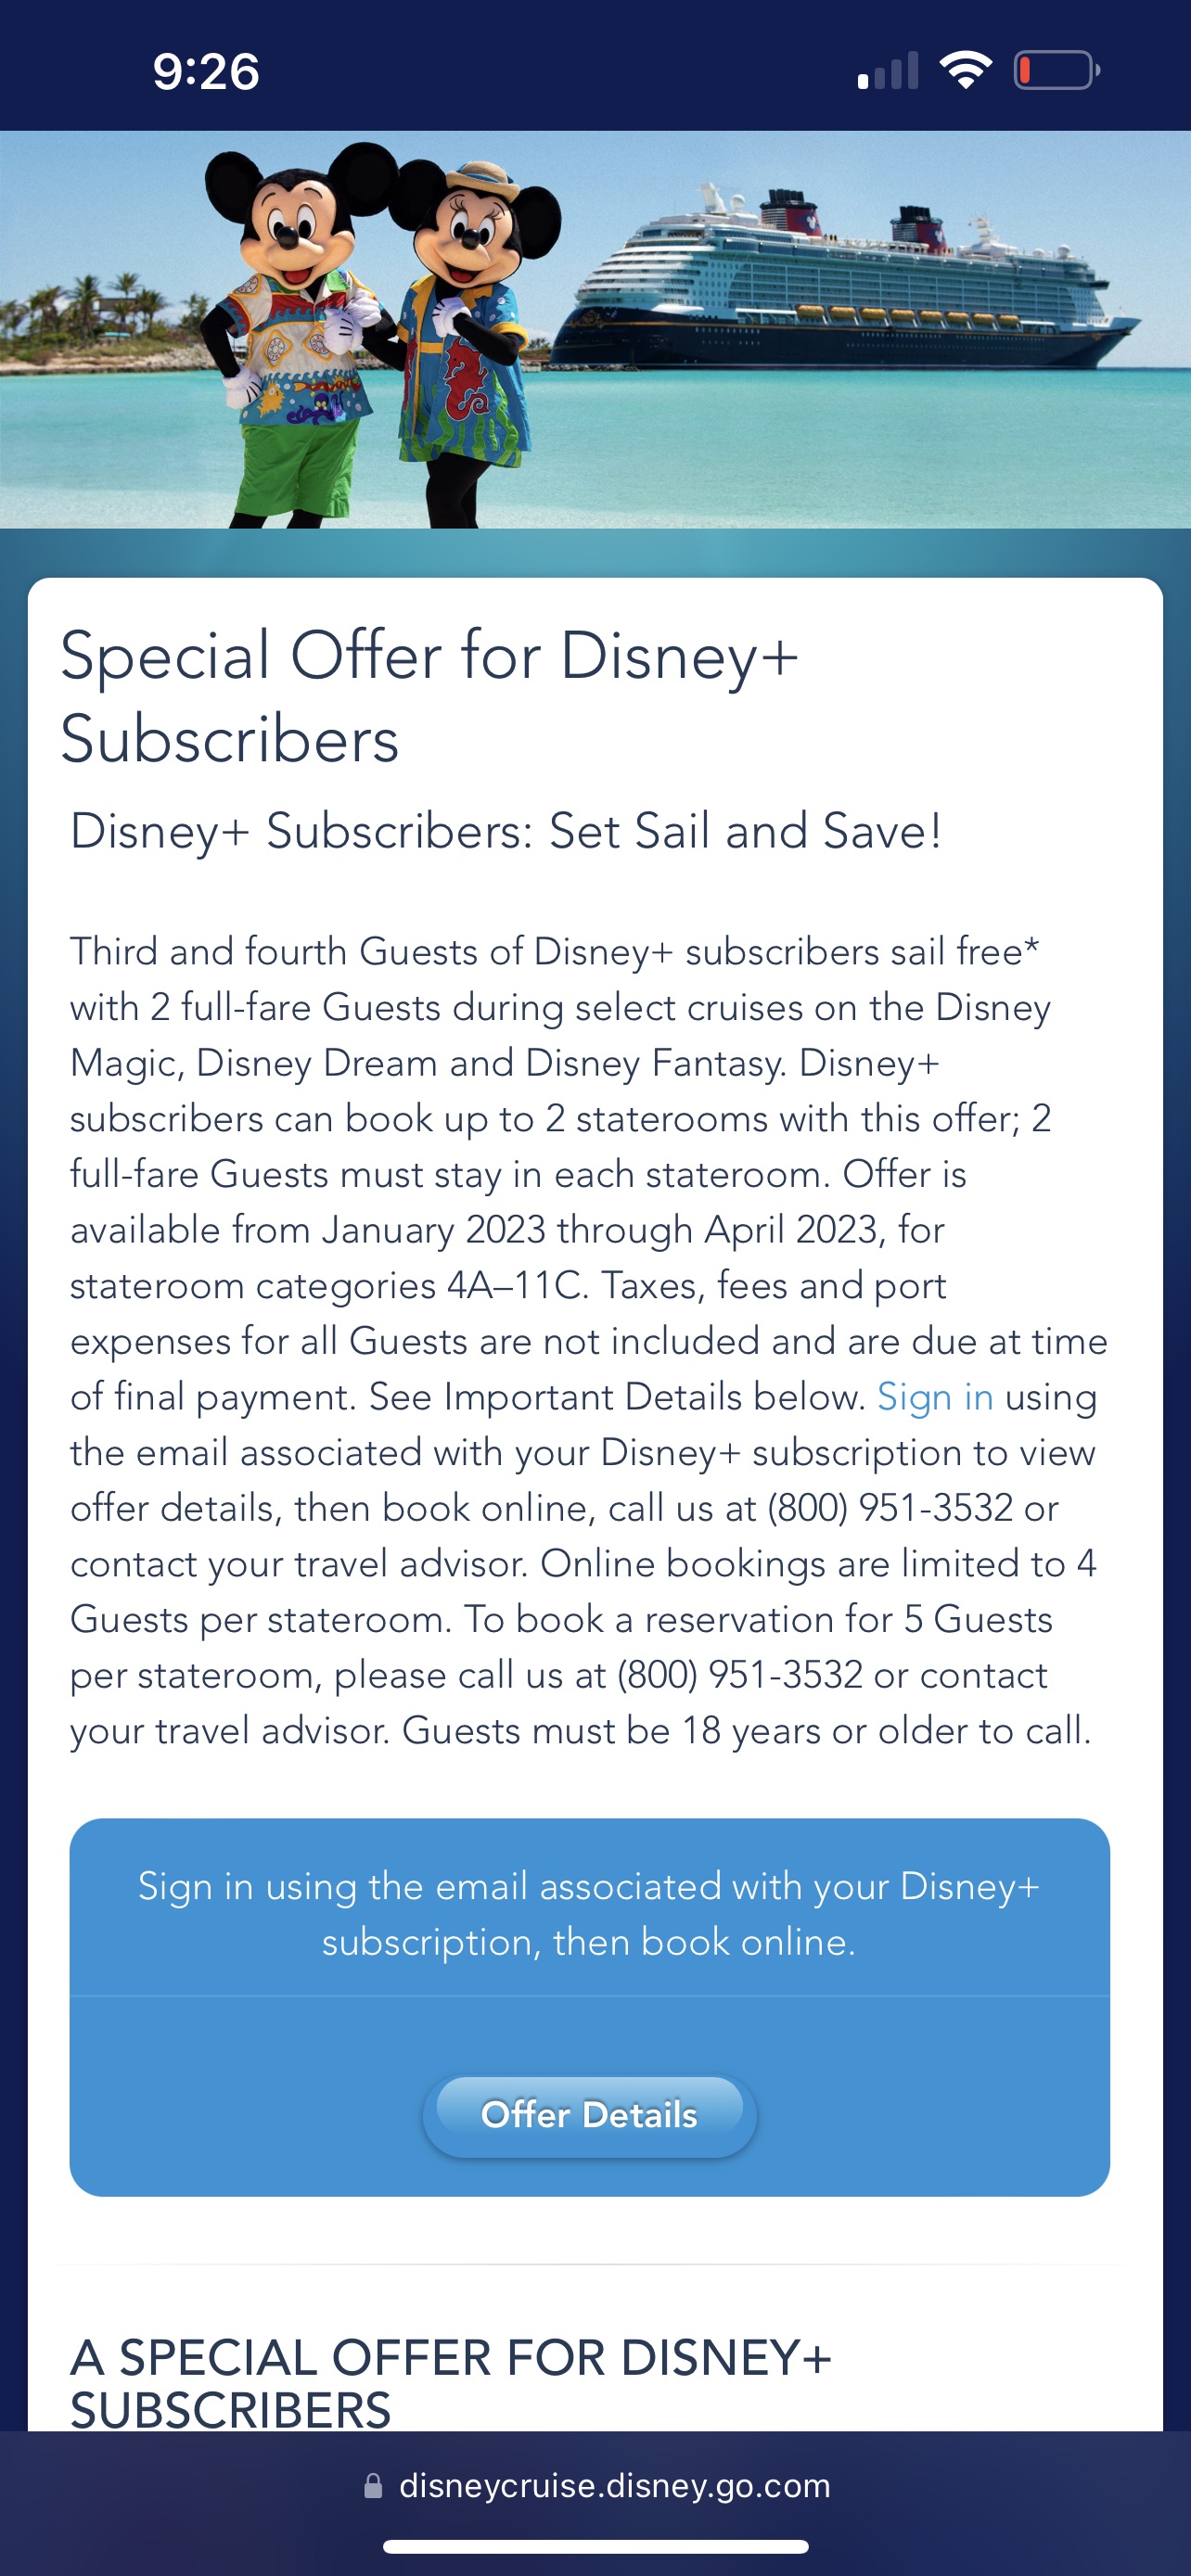 Disney+ subscriber享受迪士尼部分cruise买二送二